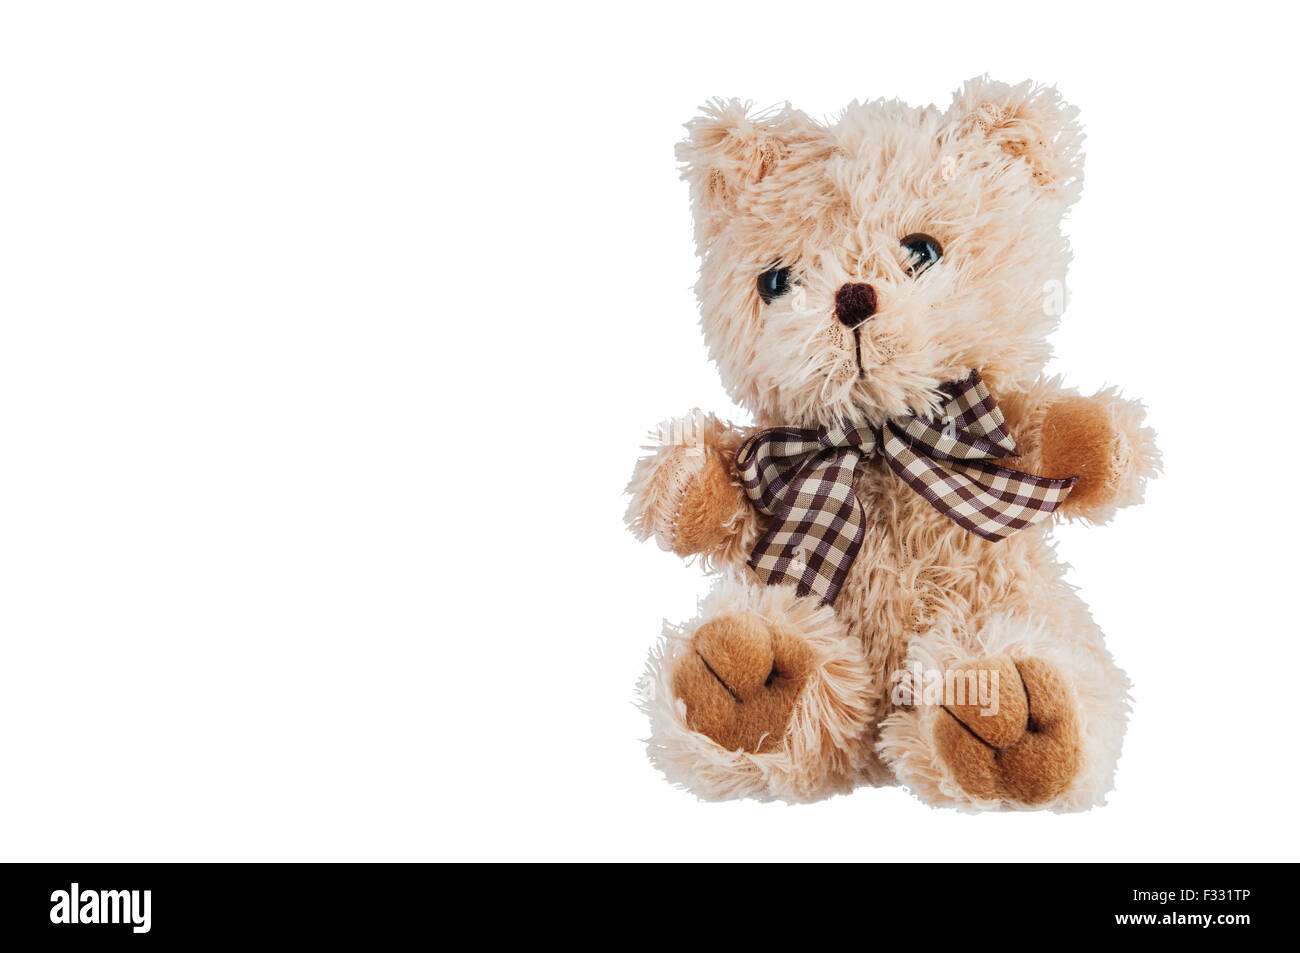 Teddy-bear toy isolato su uno sfondo bianco. Foto Stock